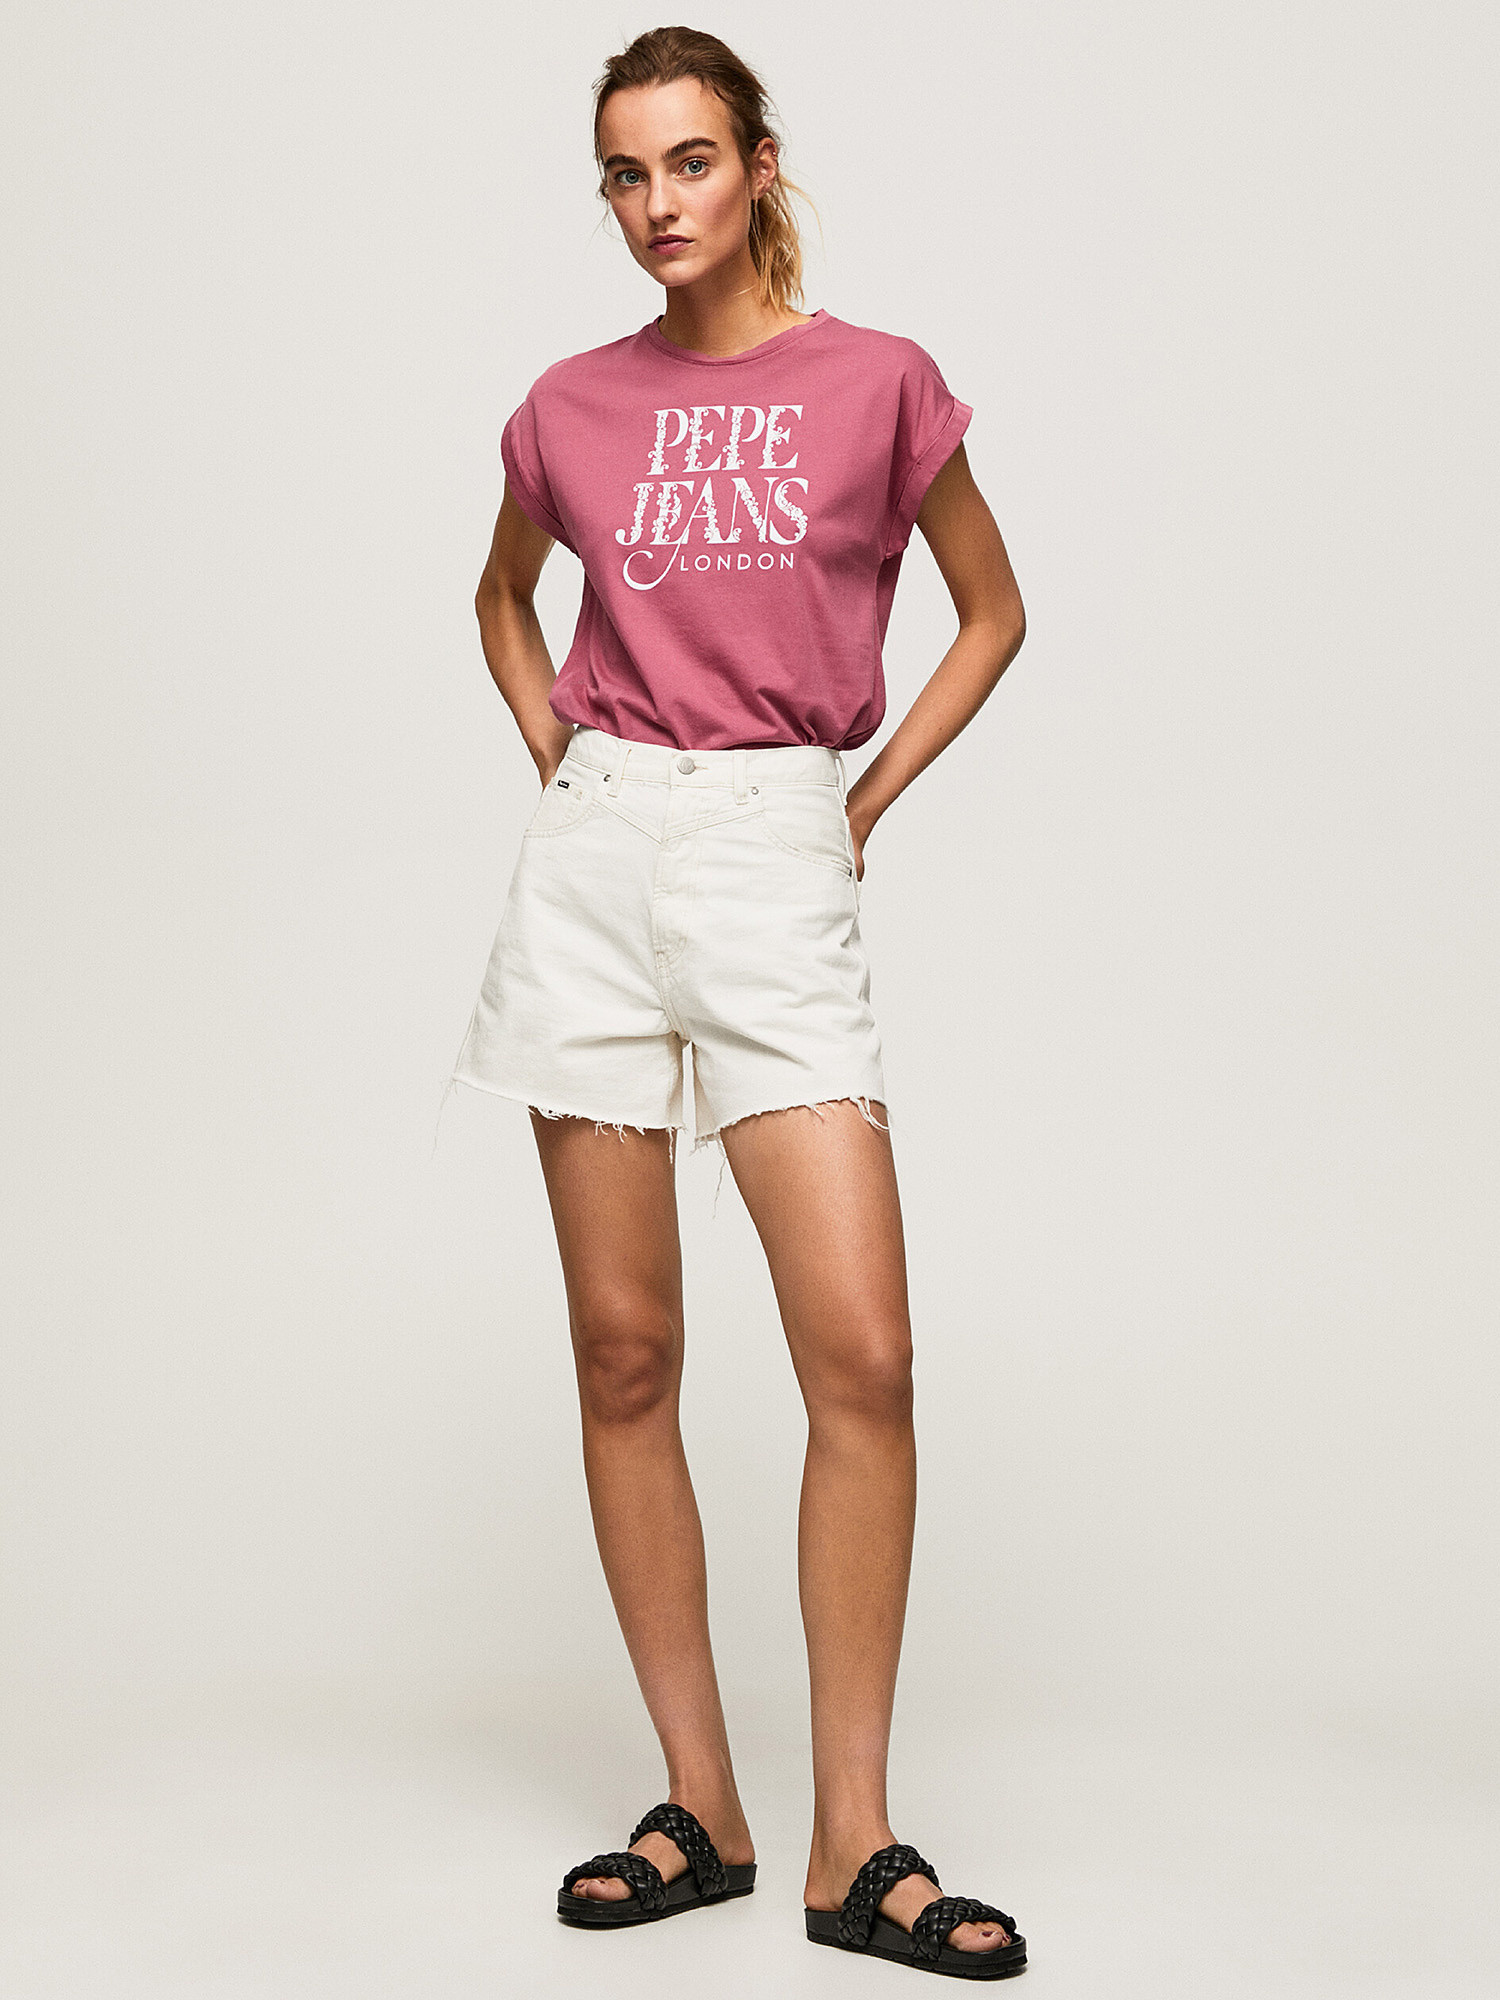 Pepe Jeans - Cotton logo T-shirt, Dark Pink, large image number 6